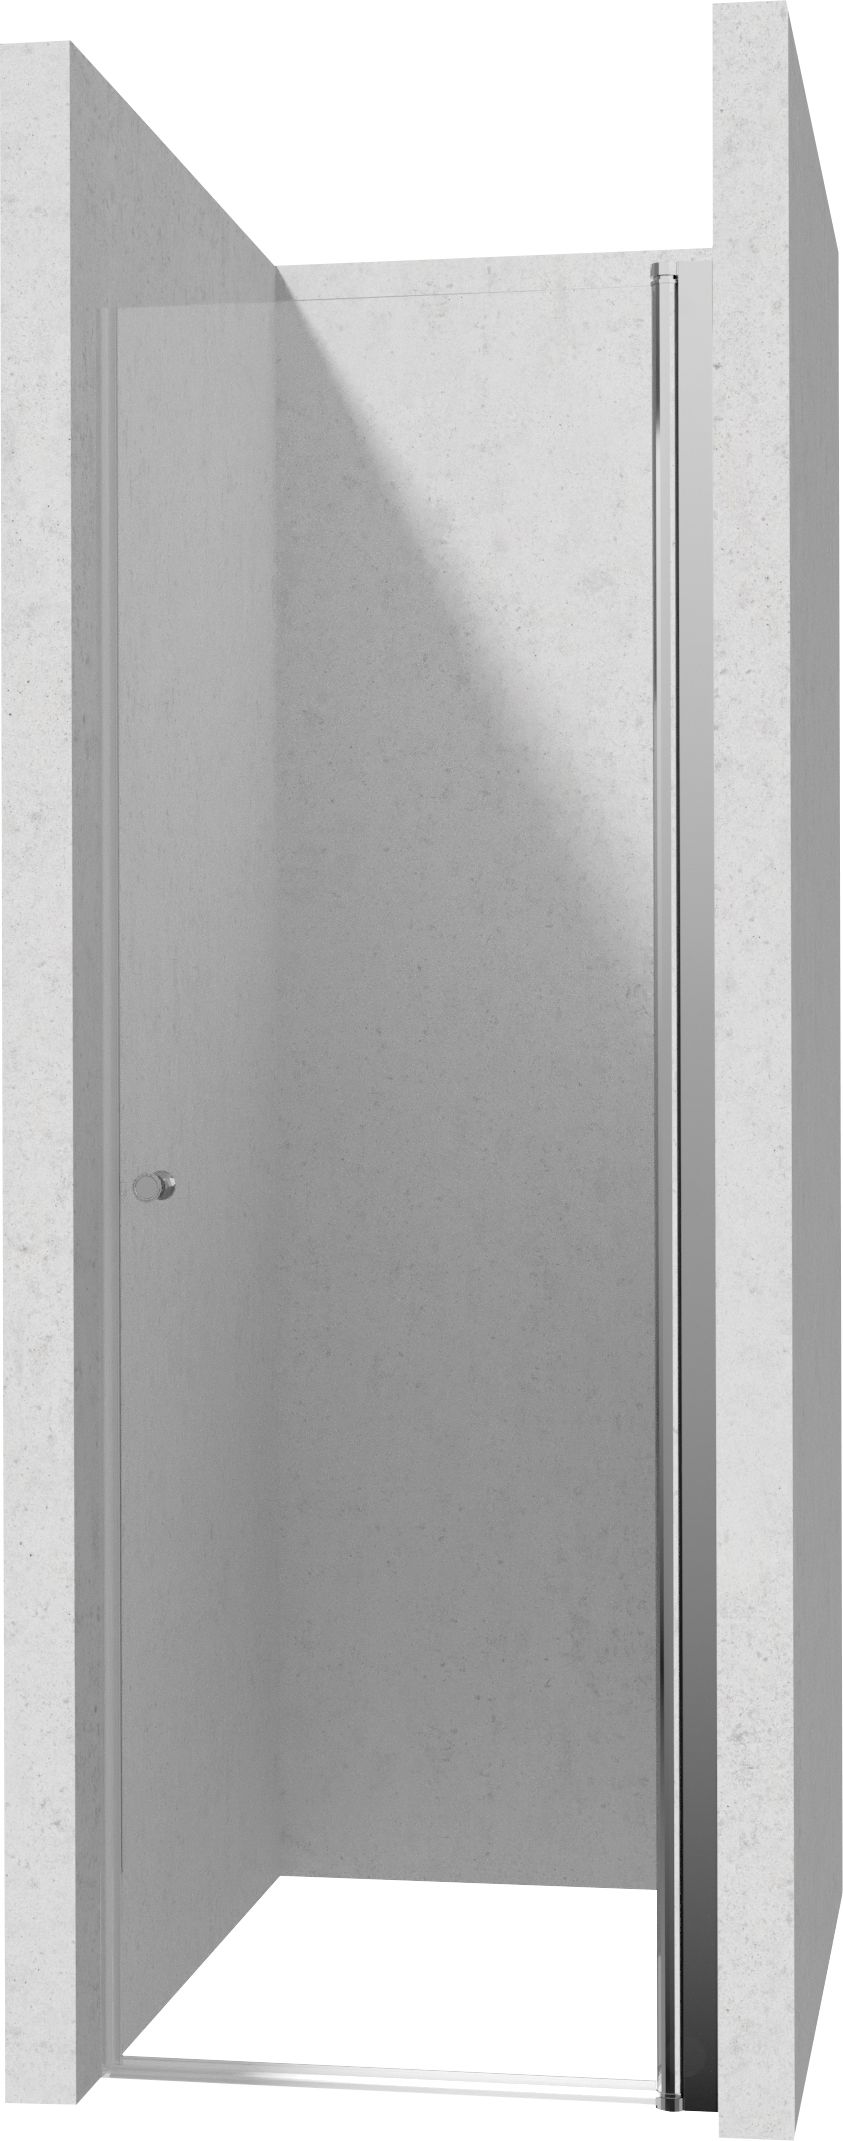 Drzwi prysznicowe 80 cm - wahadłowe - KTSW042P - Główne zdjęcie produktowe